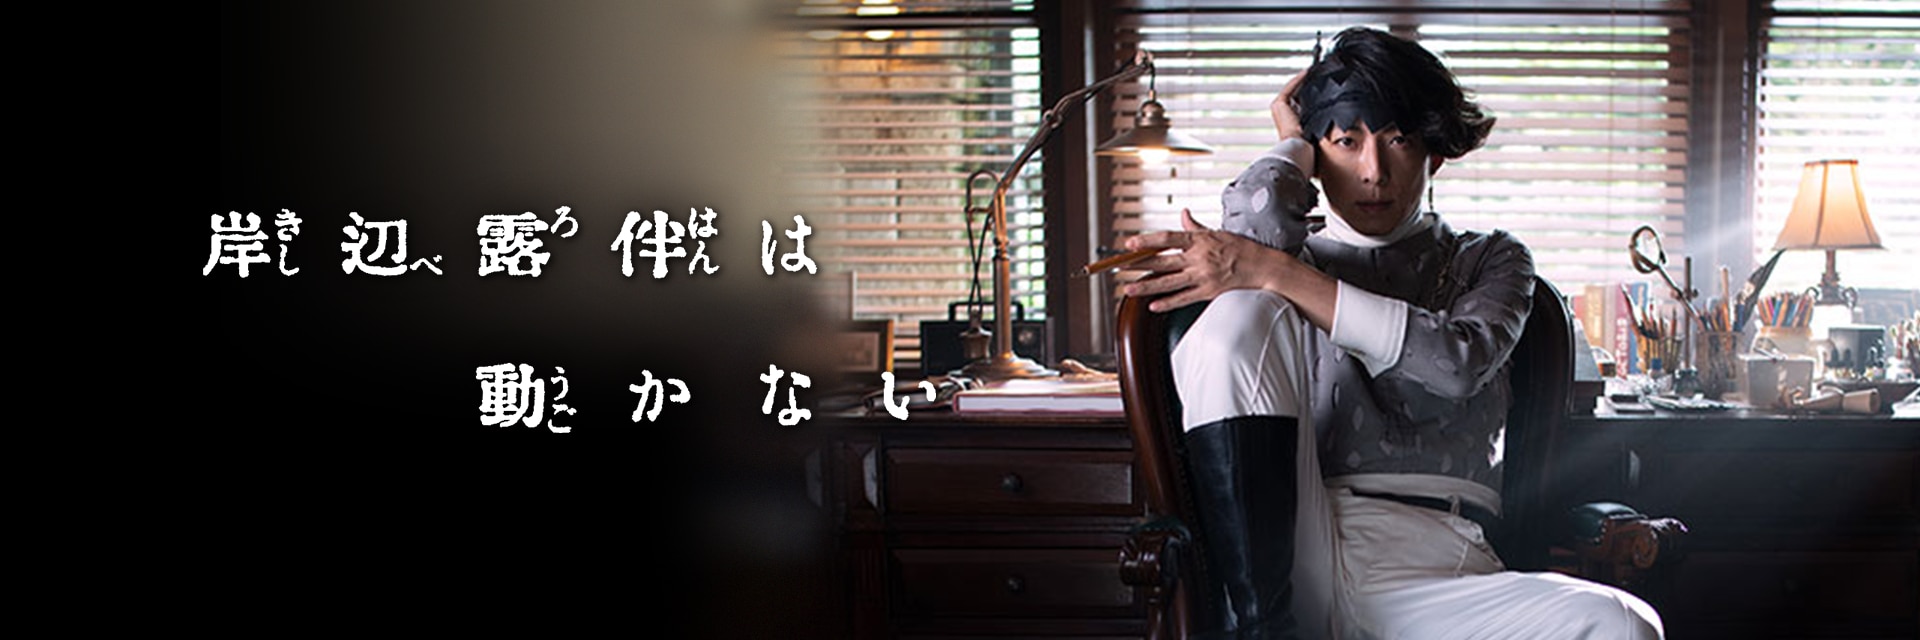 ドラマ「岸辺露伴は動かない」4〜6話 8月19日深夜 NHK総合にて再放送!